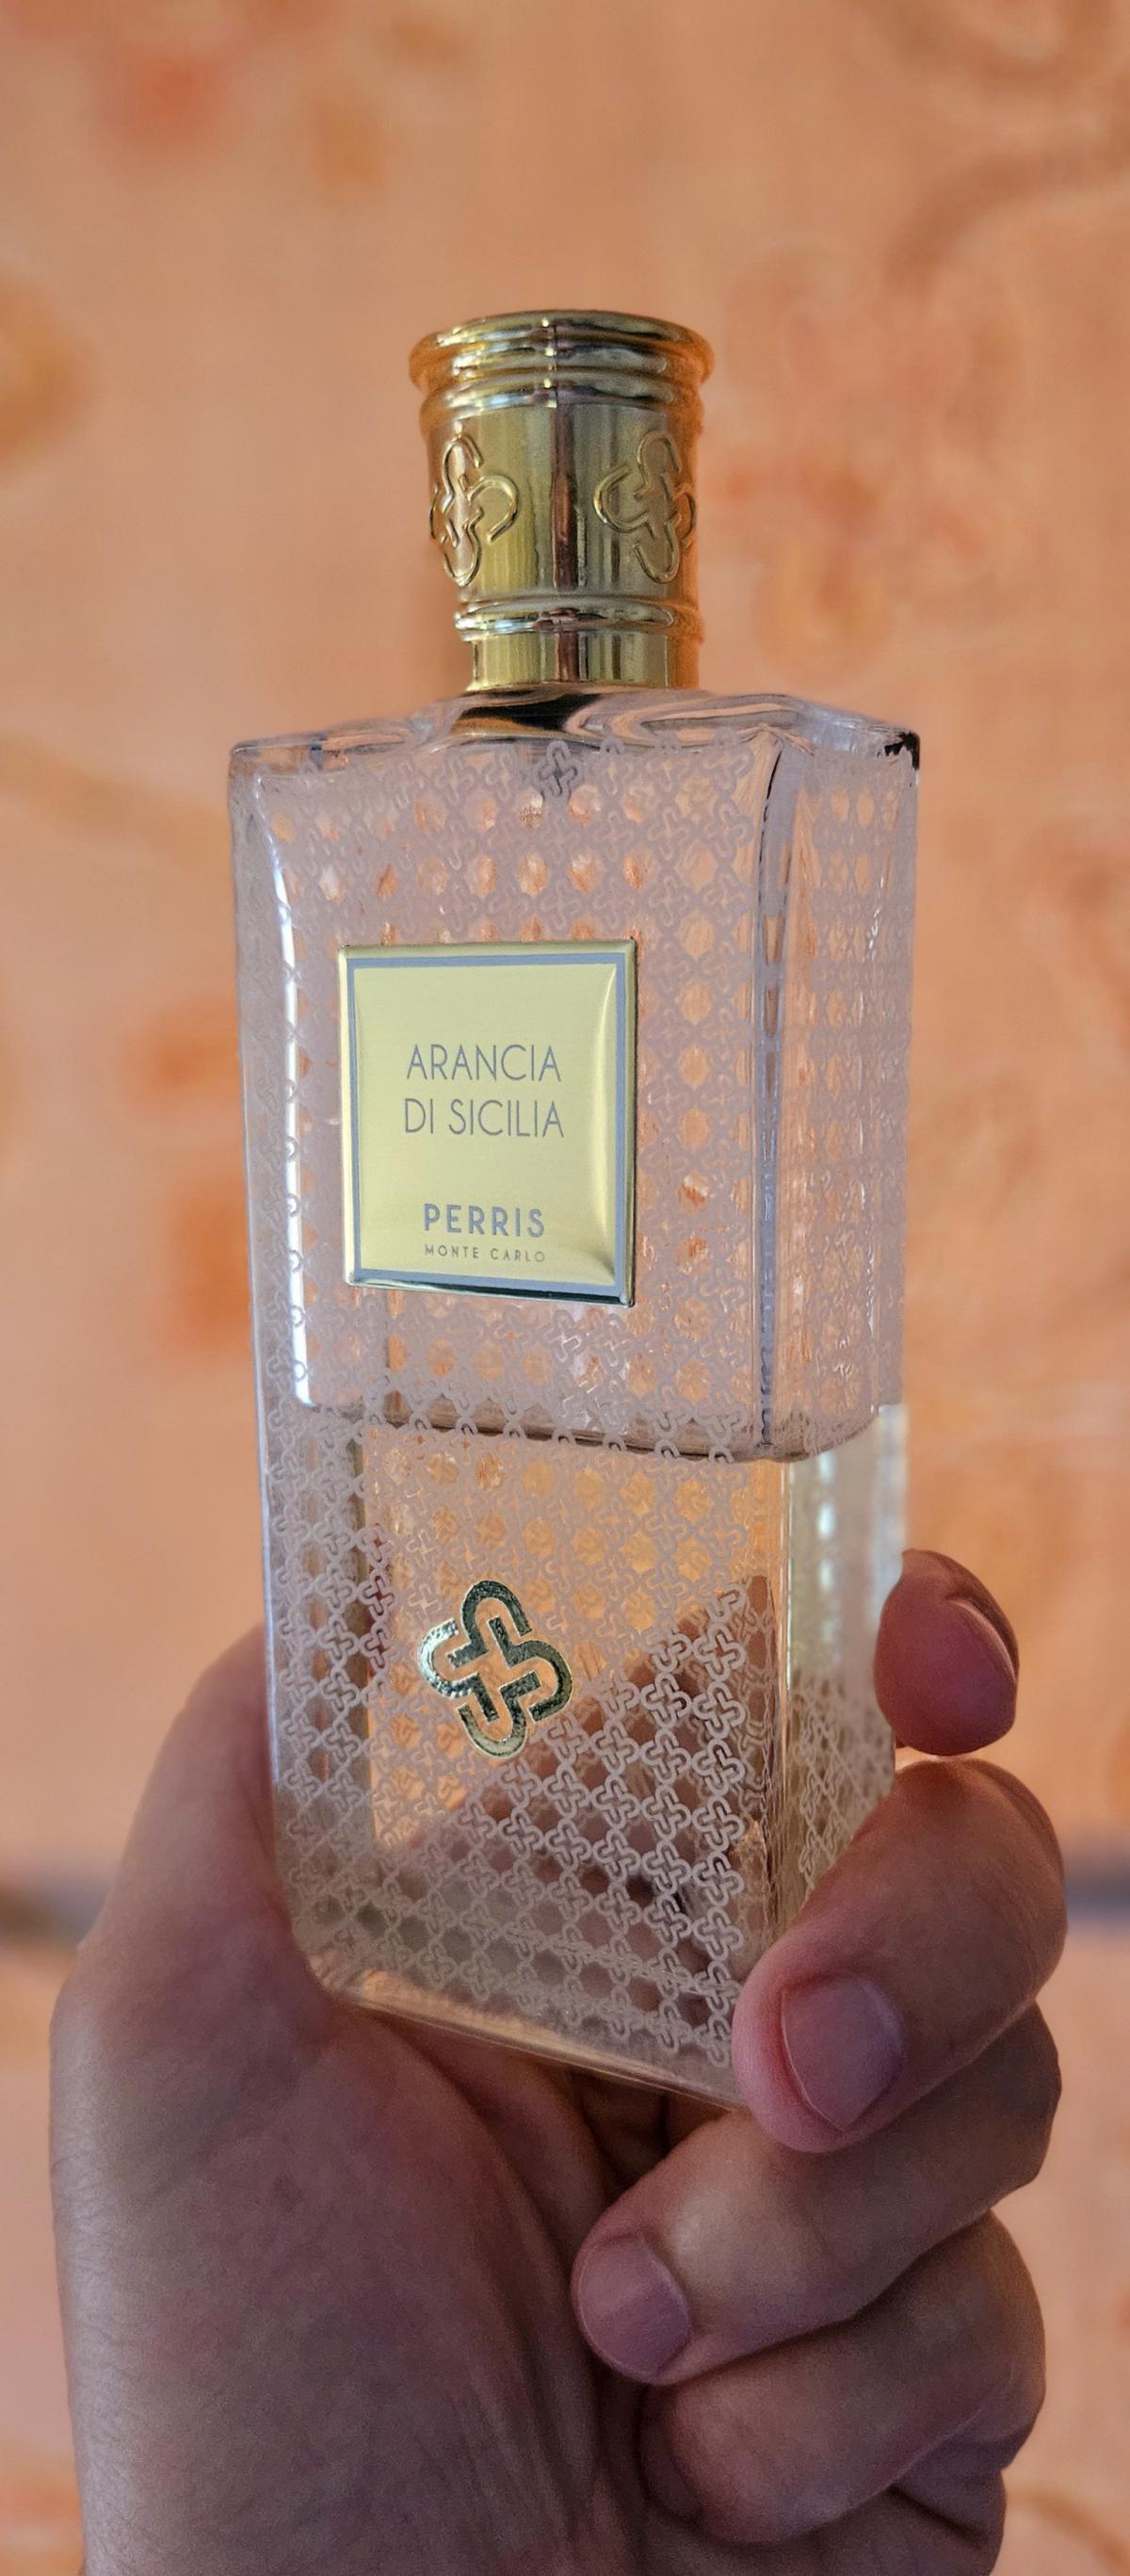 Arancia Di Sicilia Perris Monte Carlo perfume - a fragrance for women ...